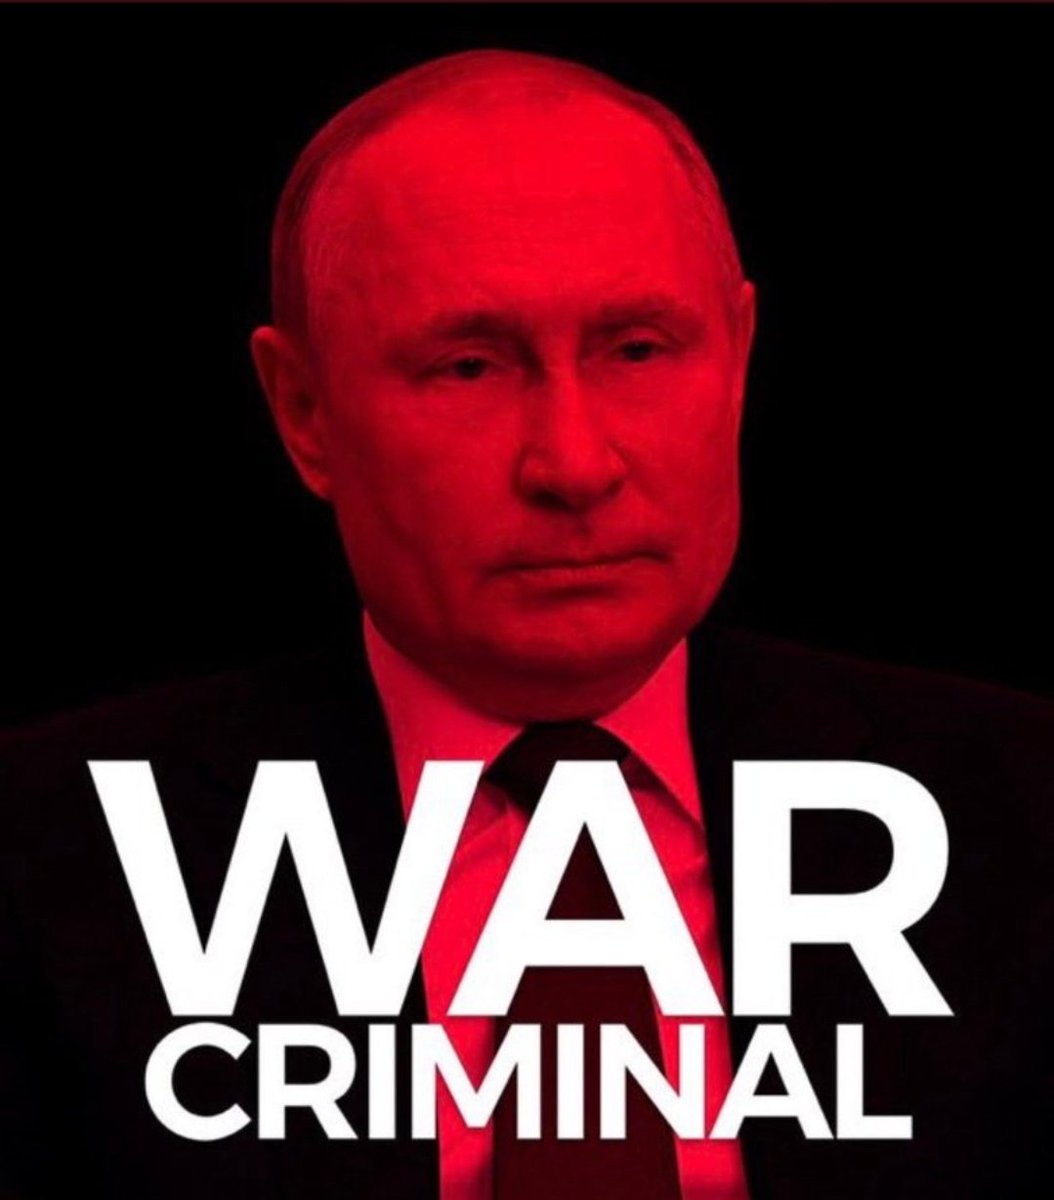 Putin is a war criminal. Please share.